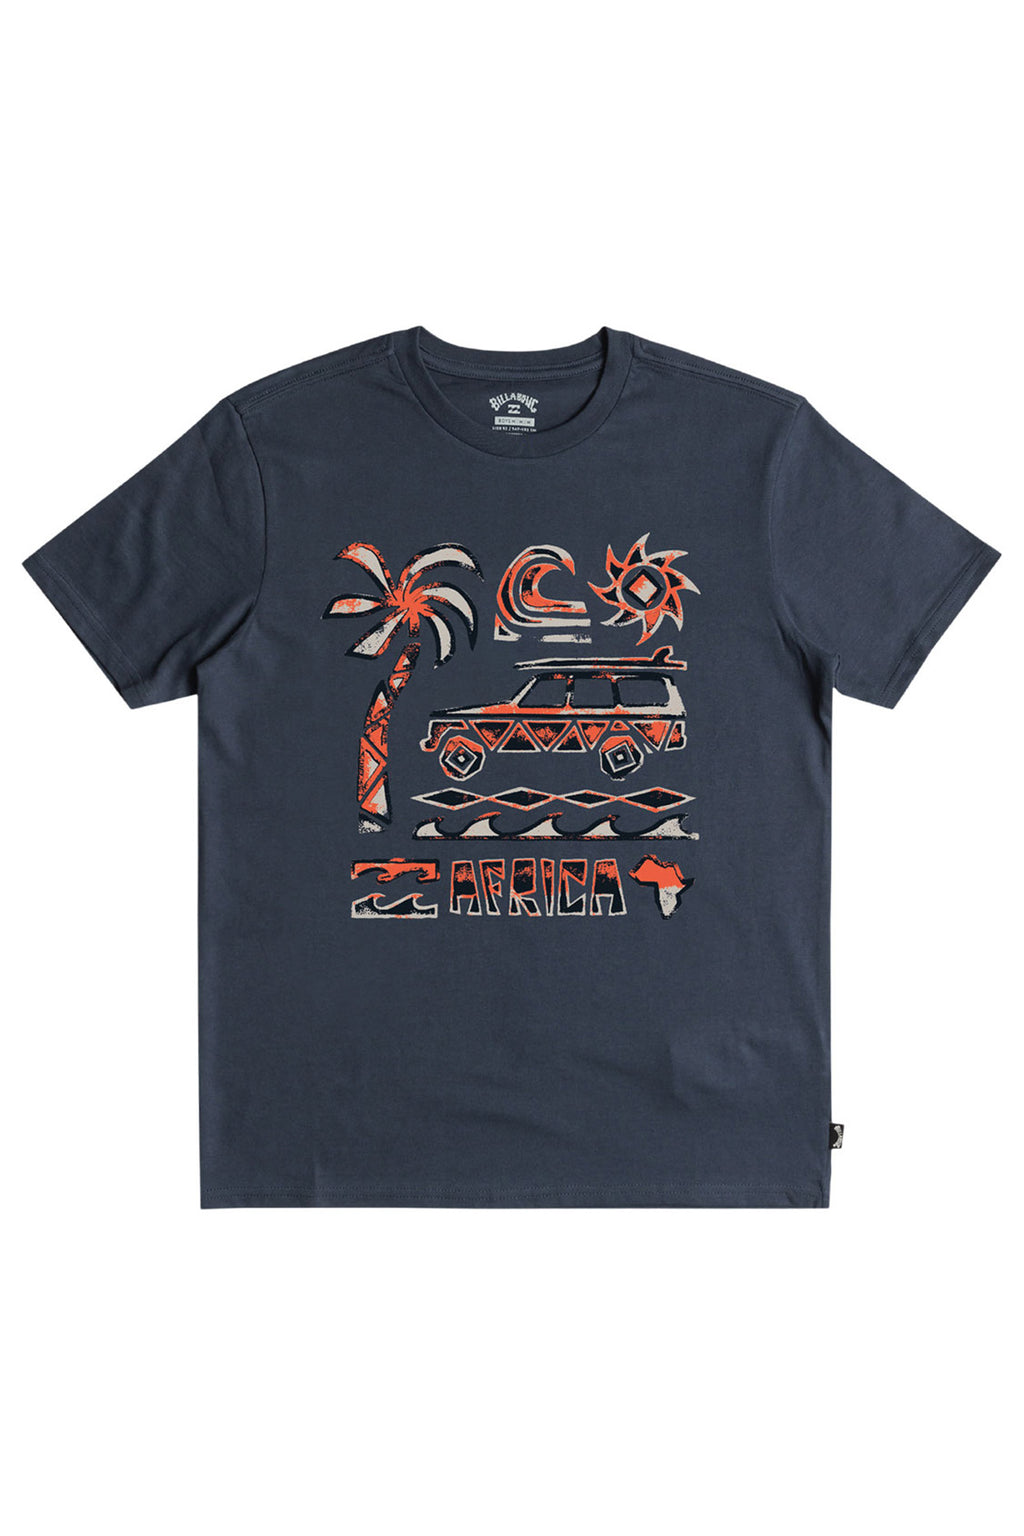 Billabong - Boys African Road Trip T-Shirt